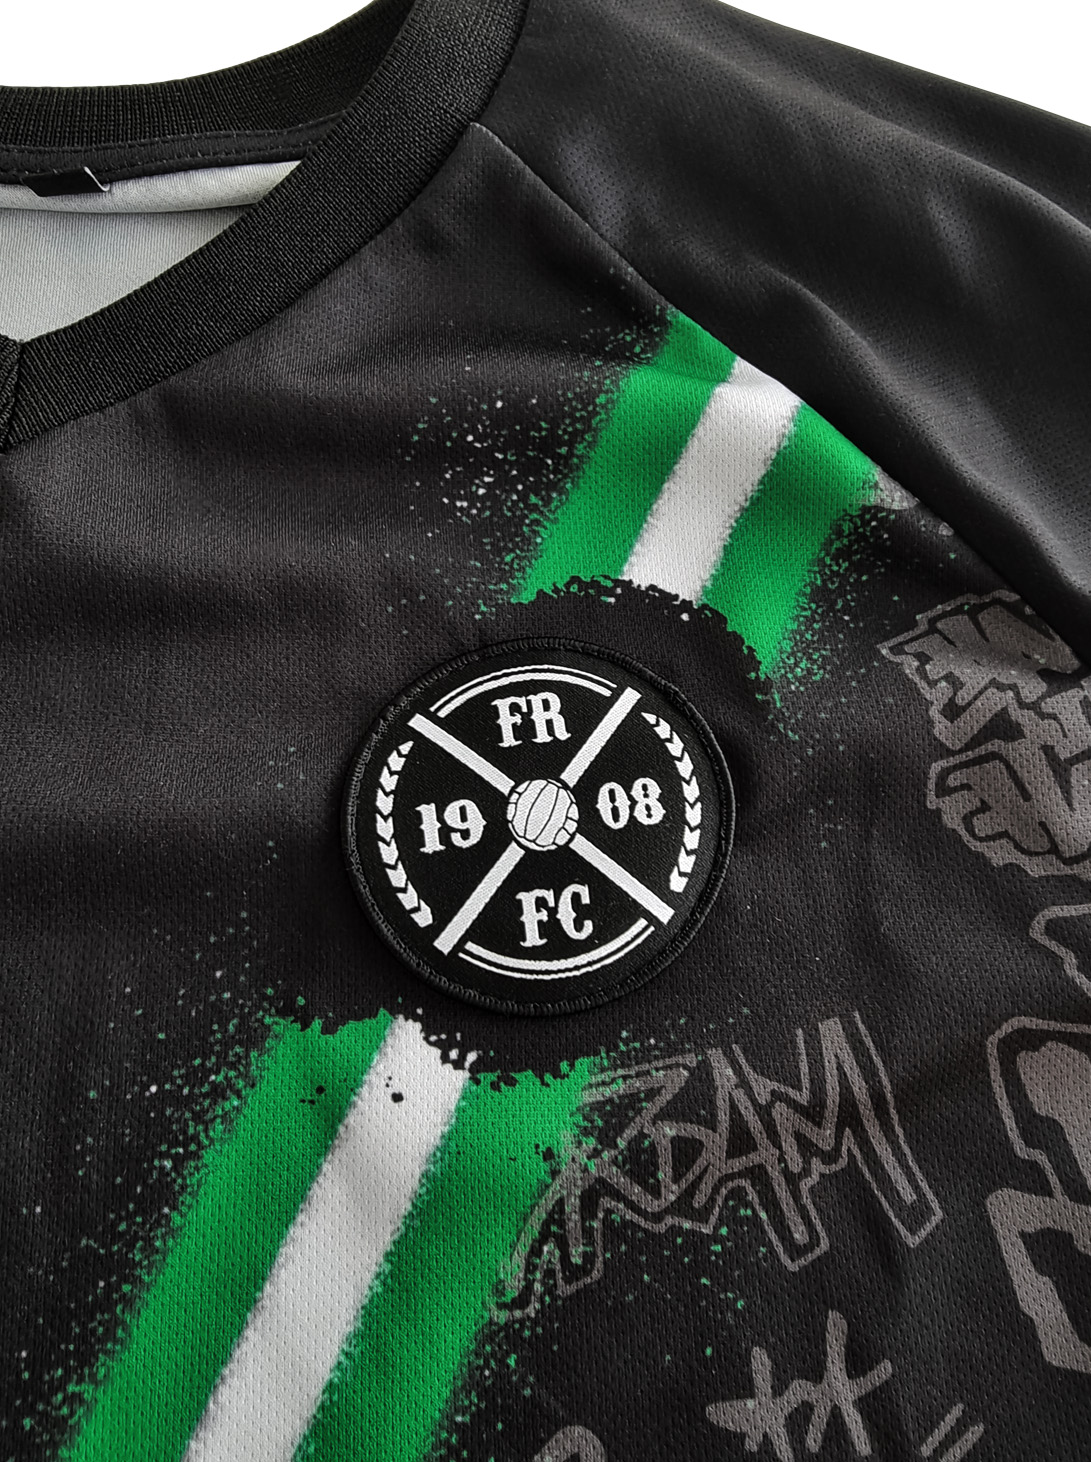 FRFC1908 Sportshirt Rotterdam - 2022 - Kruislogo Detailfoto